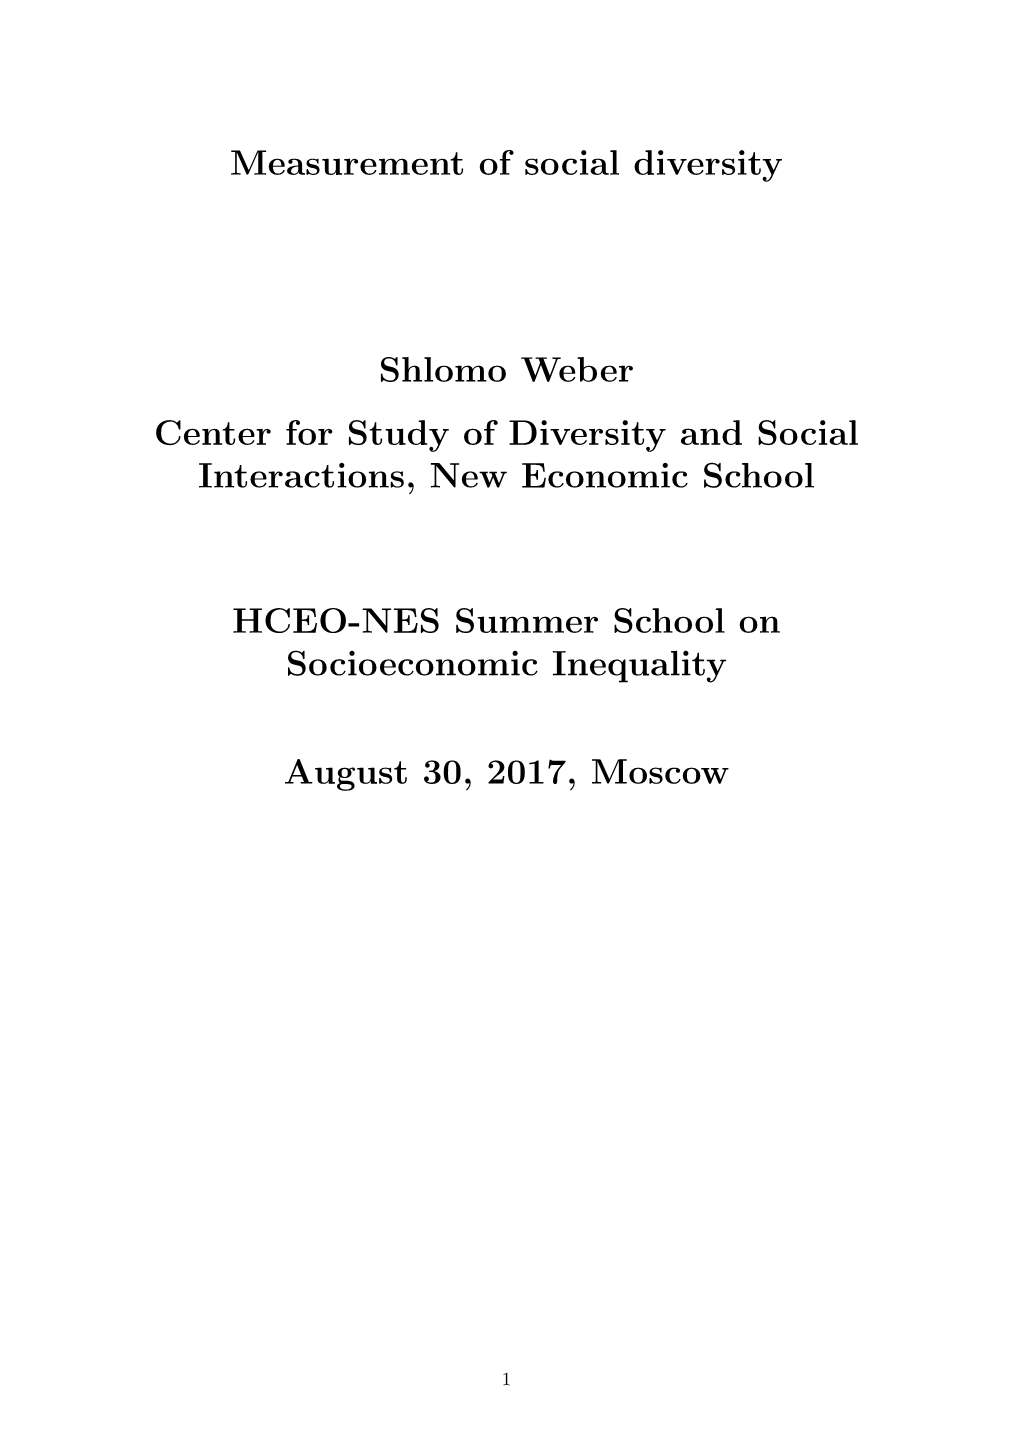 Measurement of Social Diversity Shlomo Weber Center For